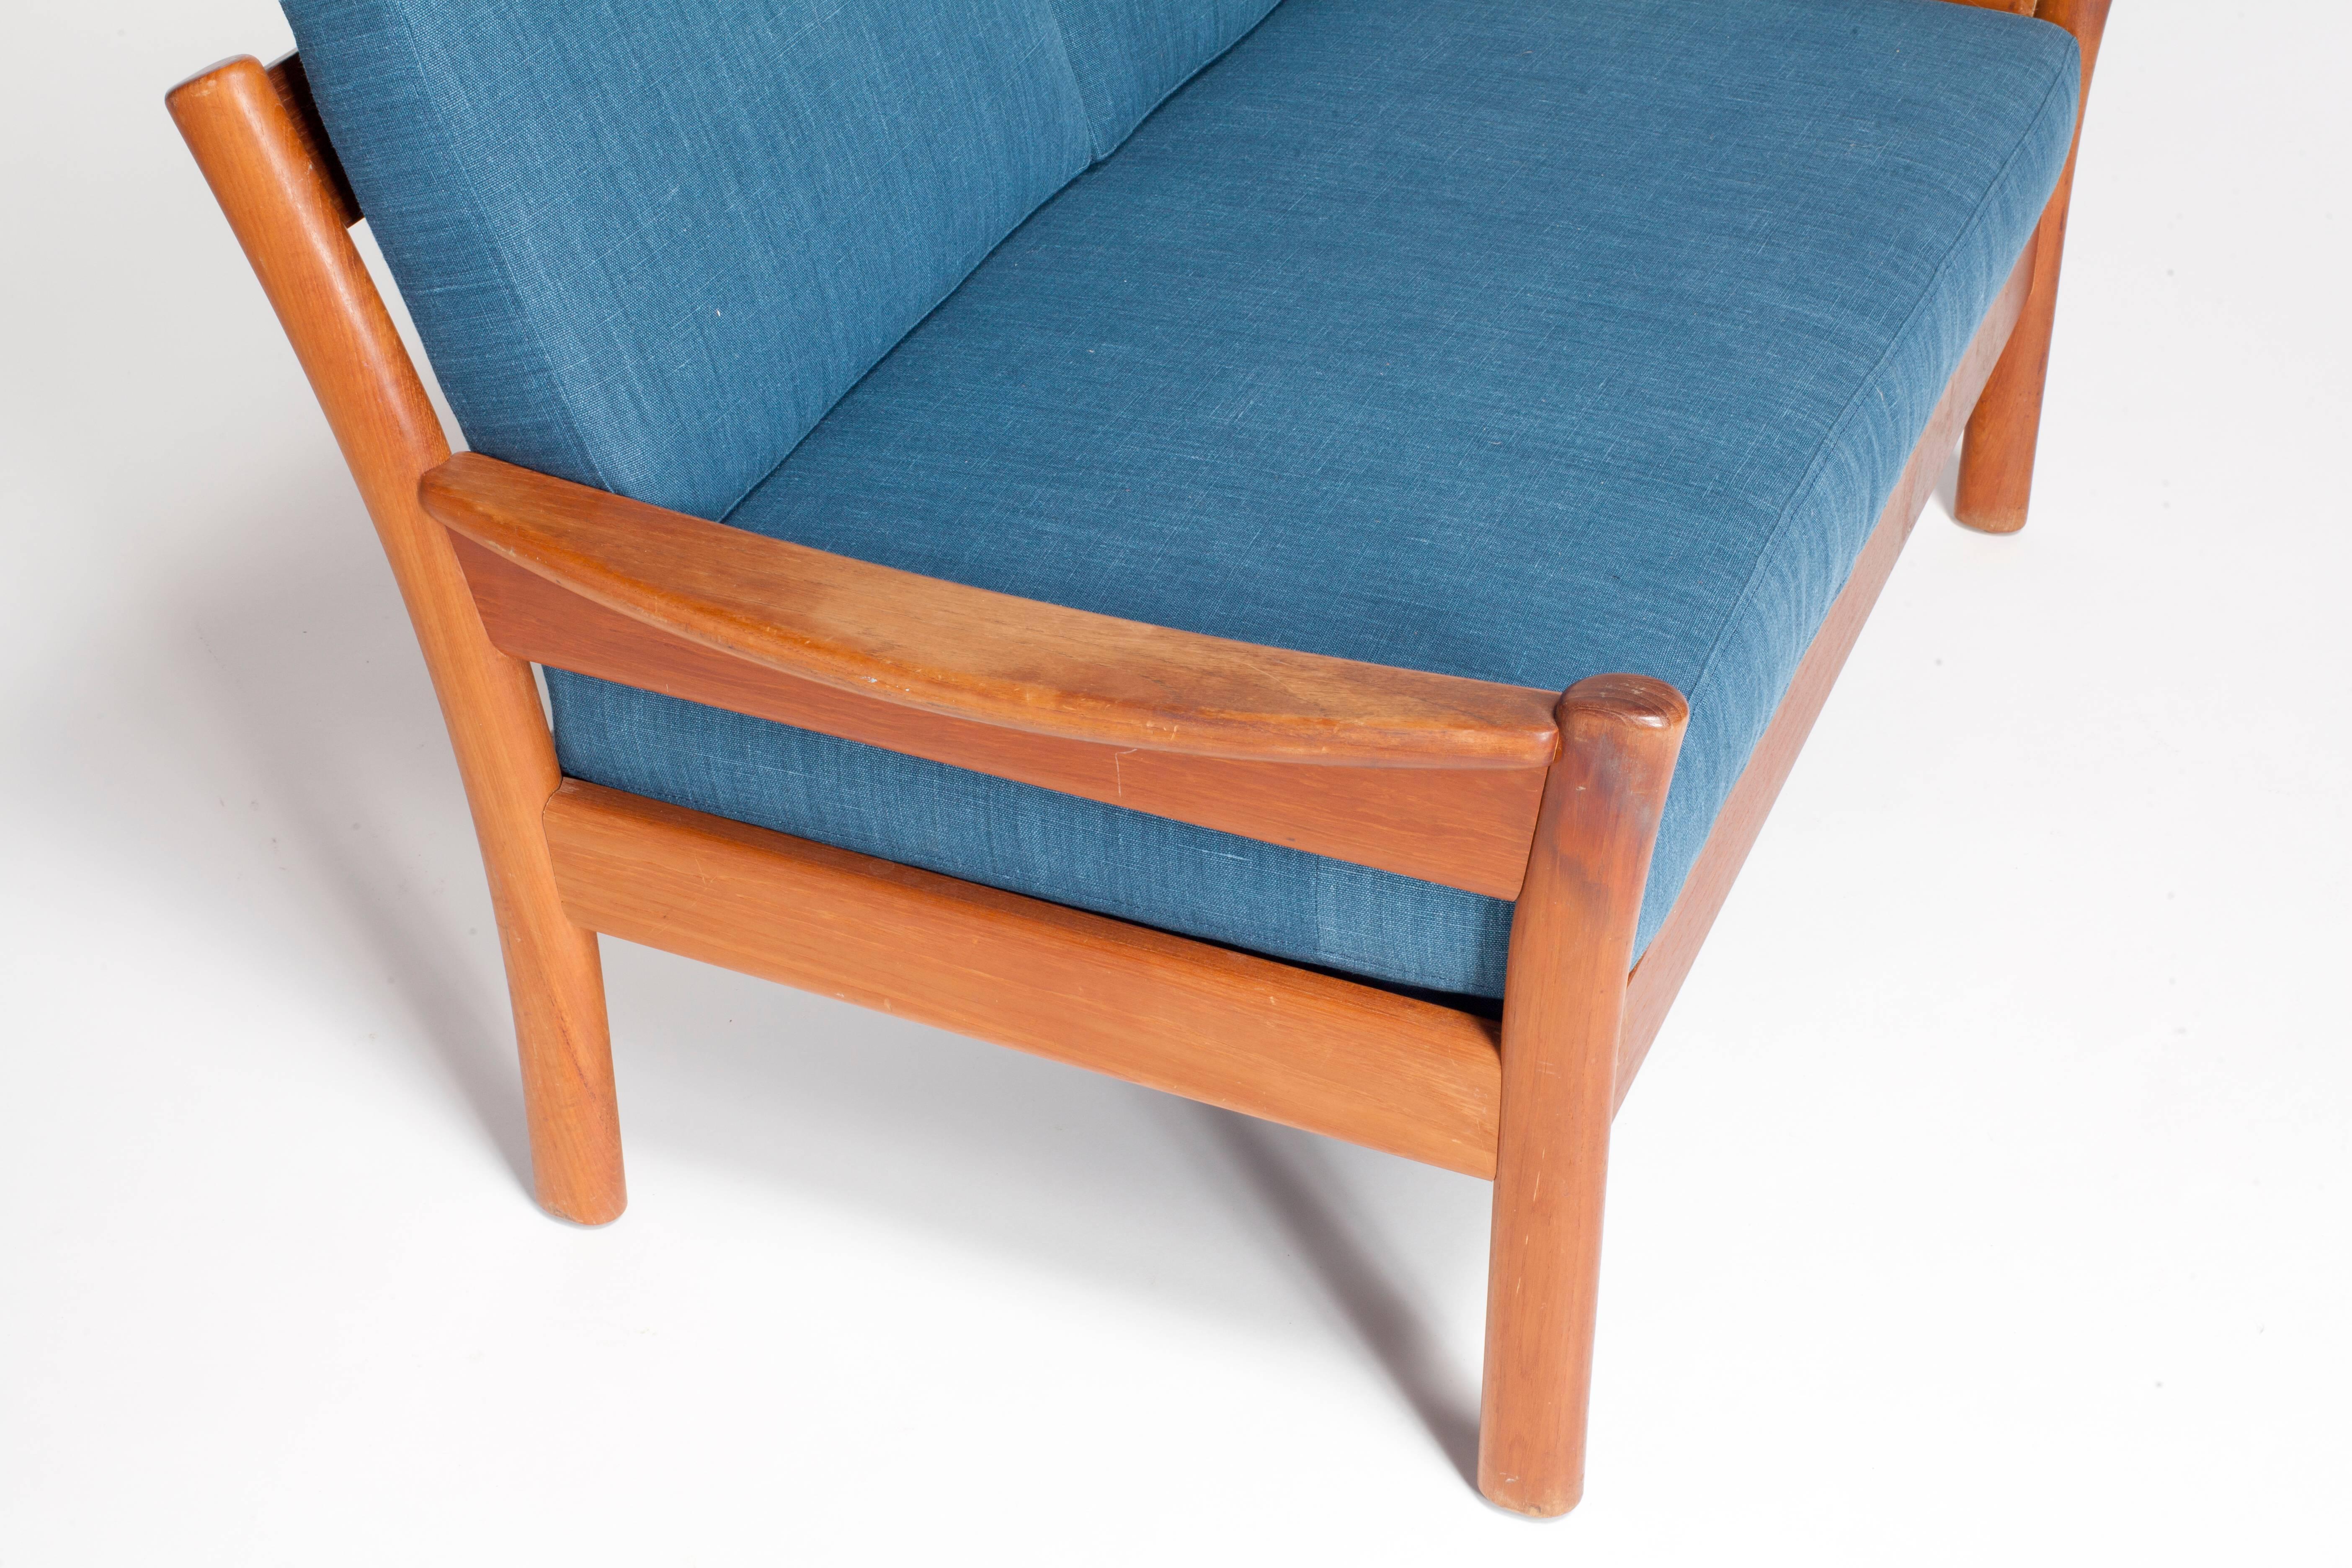 Midcentury walnut open framed settee upholstered in blue linen.